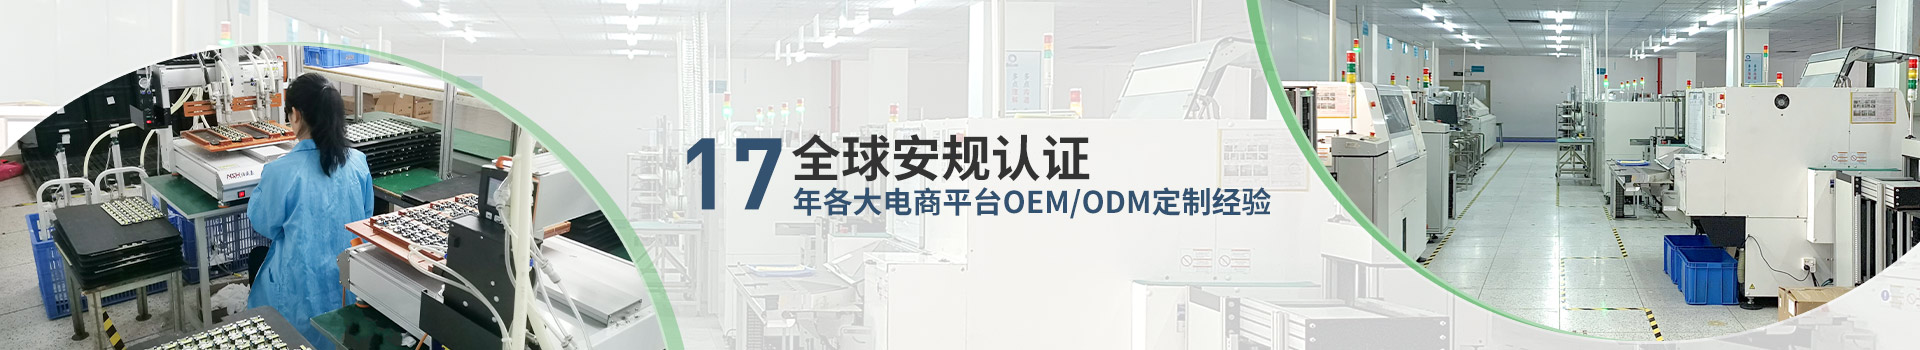 17年各大电商平台OEM/ODM定制经验-北美通